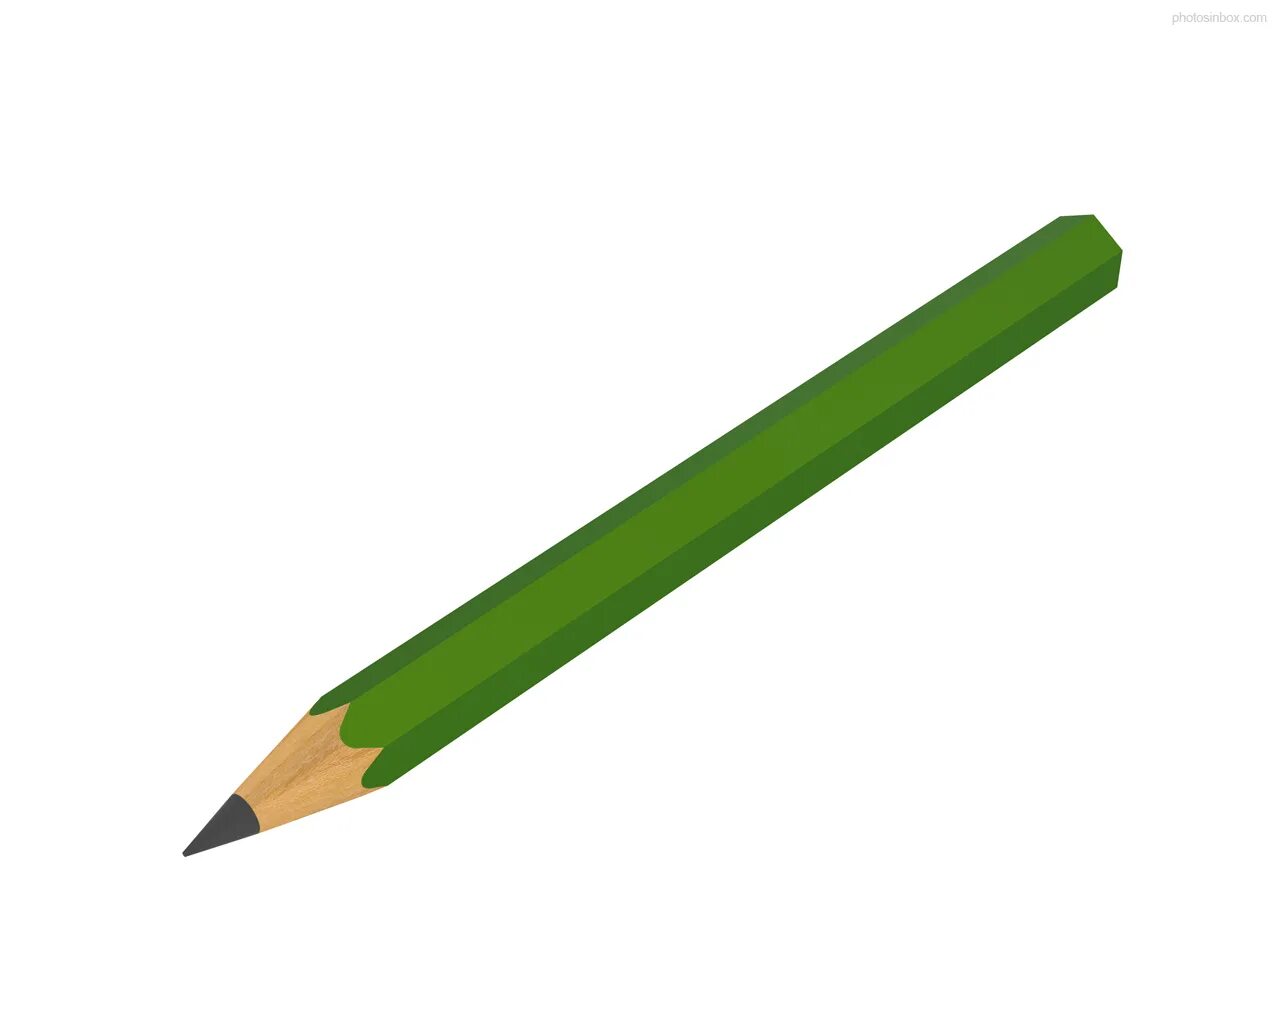 Купить зеленый карандаш. Зеленый карандаш. Карандаш для детей. Зеленый карандаш для детей. Карандаш на прозрачном фоне.